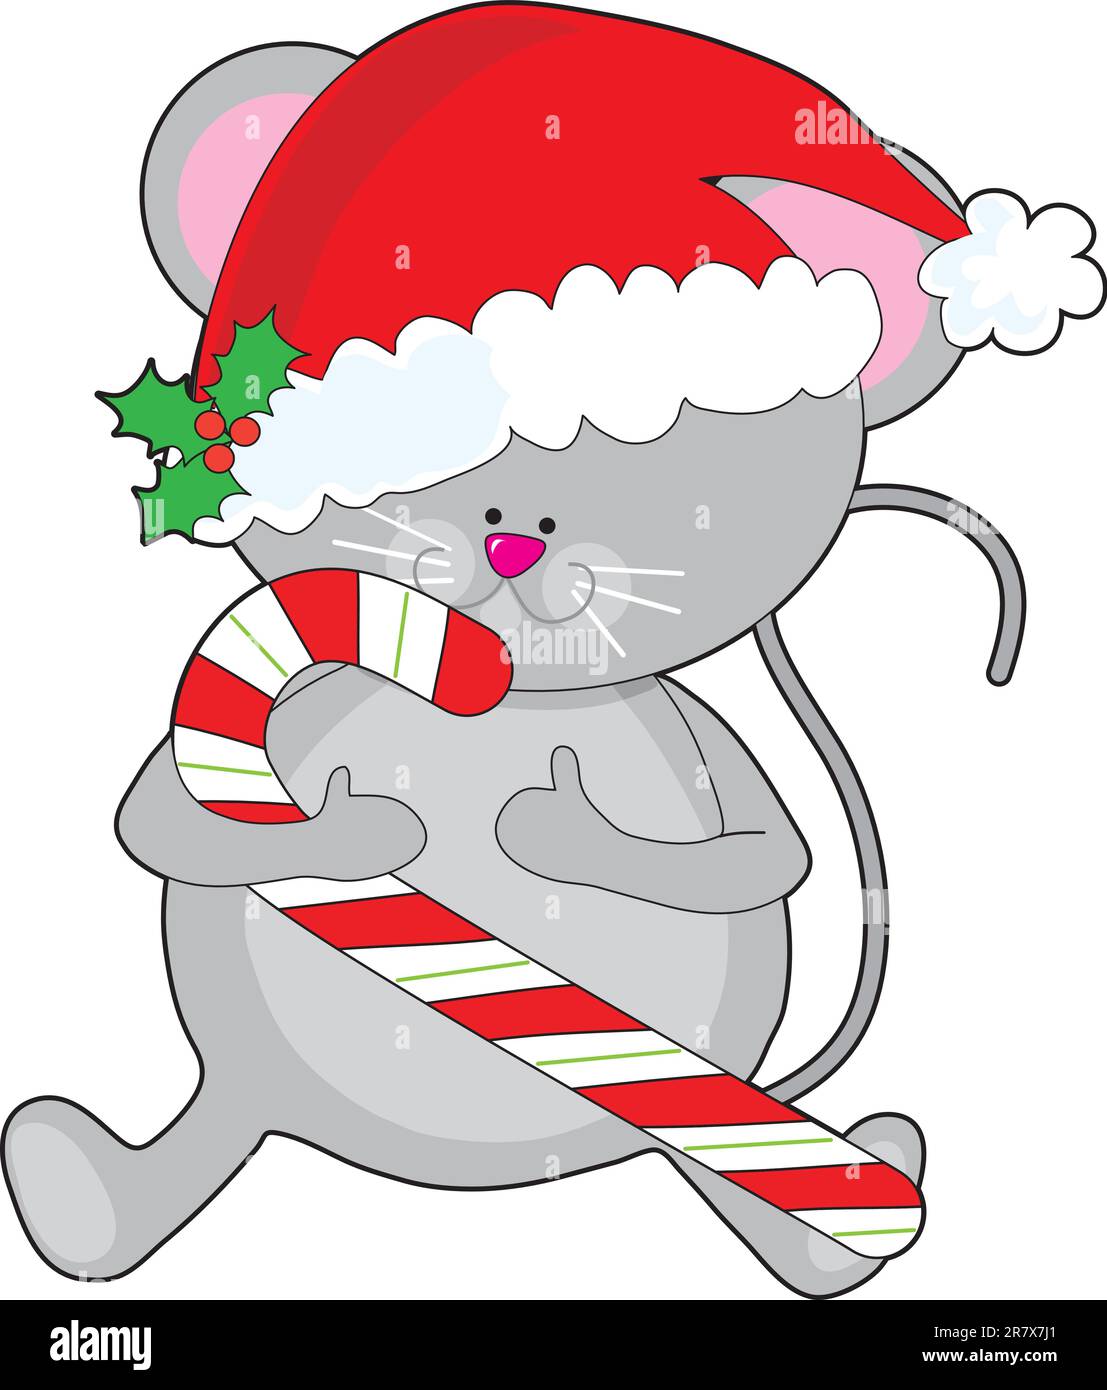 Eine süße, lächelnde Maus hält einen Zuckerstock und trägt einen Weihnachtsmannmütze, geschmückt mit einem Zweig Heilige. Stock Vektor